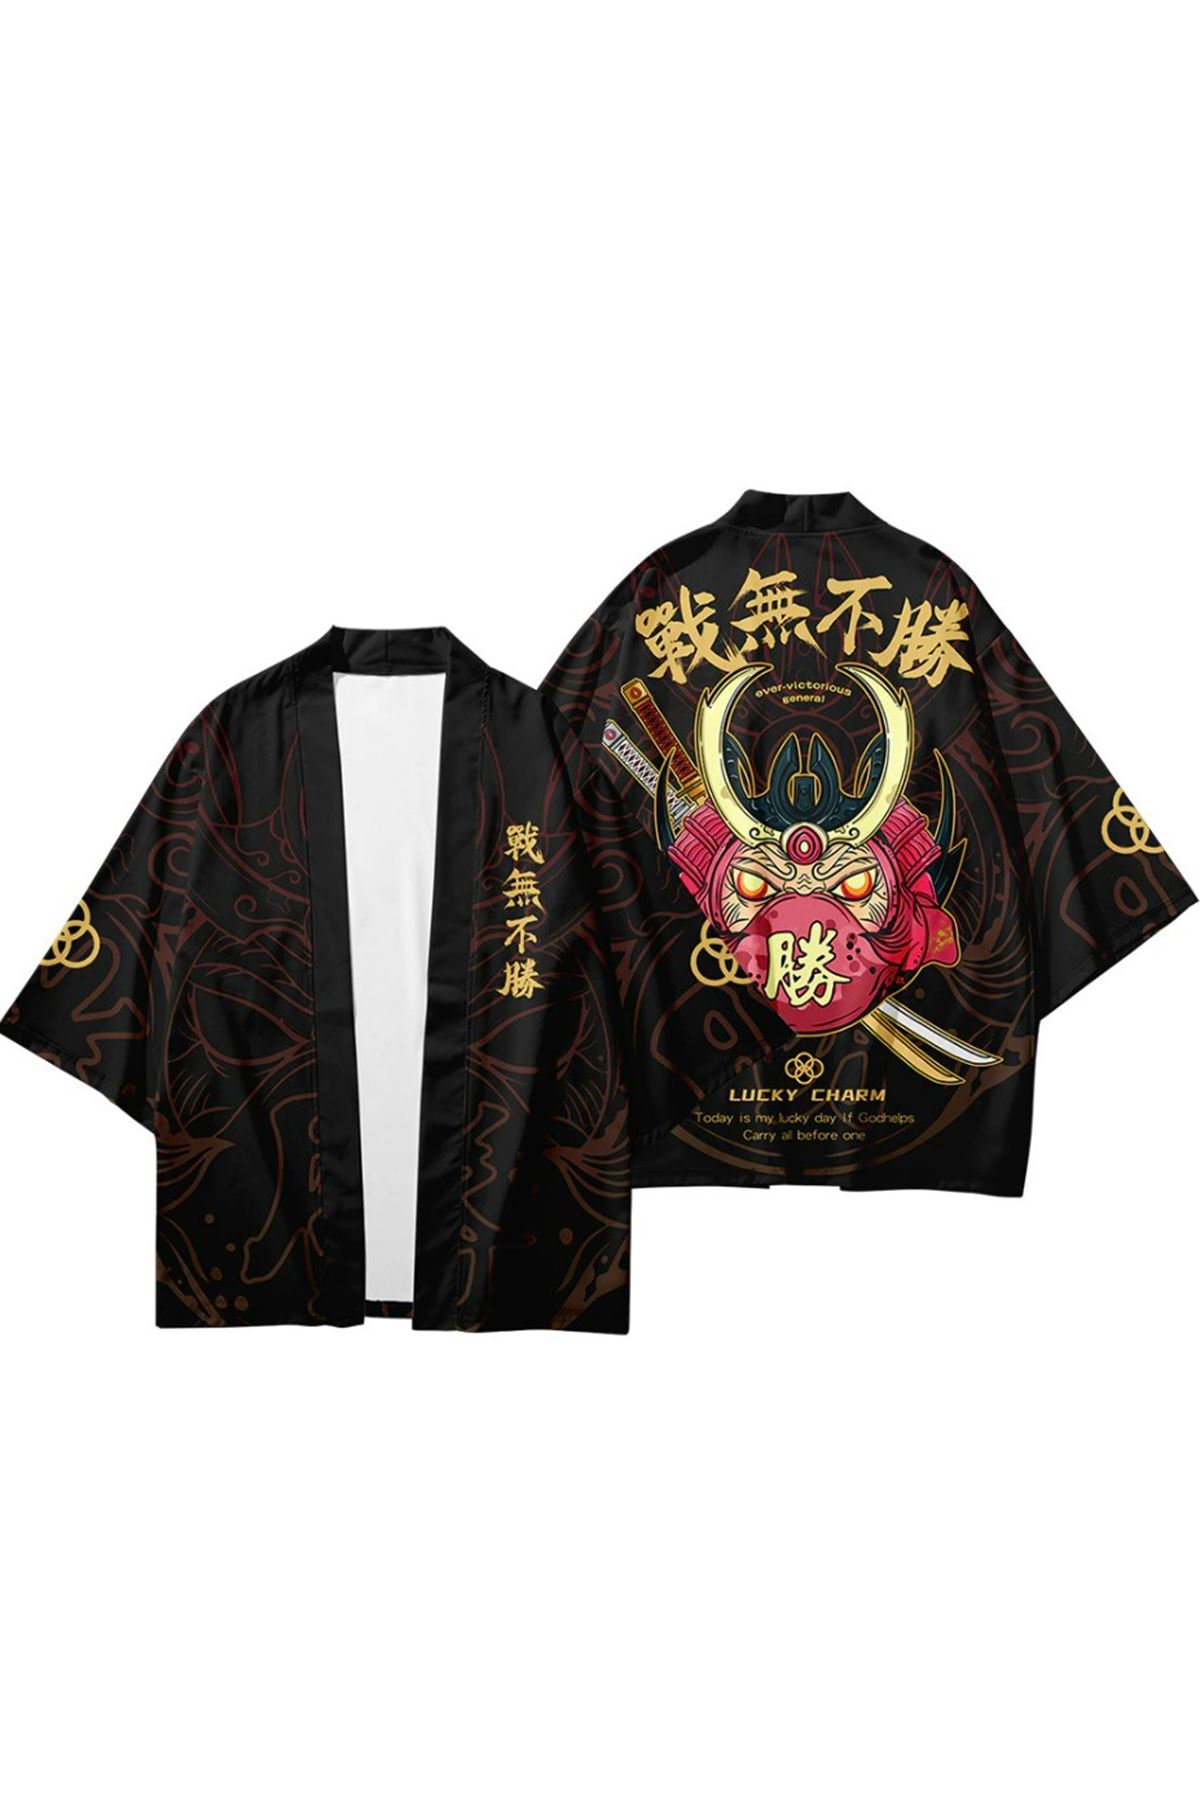 Japon Kadın/Erkek/Unisex/Oversize Siyah/Bej/Kırmızı Kimono-Siyah 1021